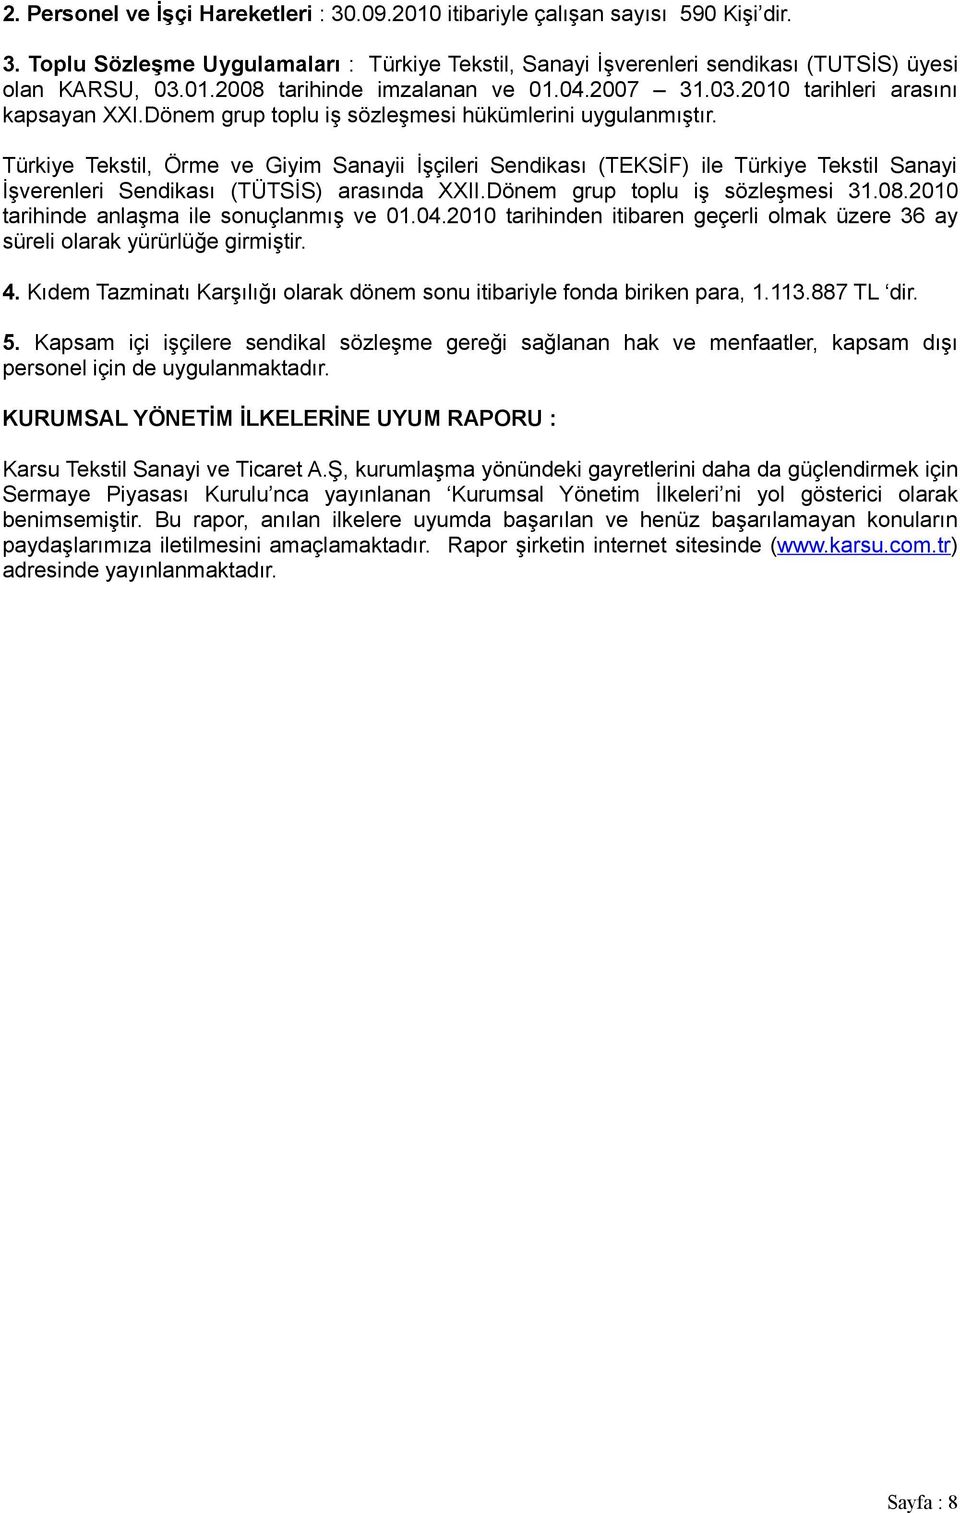 Türkiye Tekstil, Örme ve Giyim Sanayii İşçileri Sendikası (TEKSİF) ile Türkiye Tekstil Sanayi İşverenleri Sendikası (TÜTSİS) arasında XXII.Dönem grup toplu iş sözleşmesi 31.08.